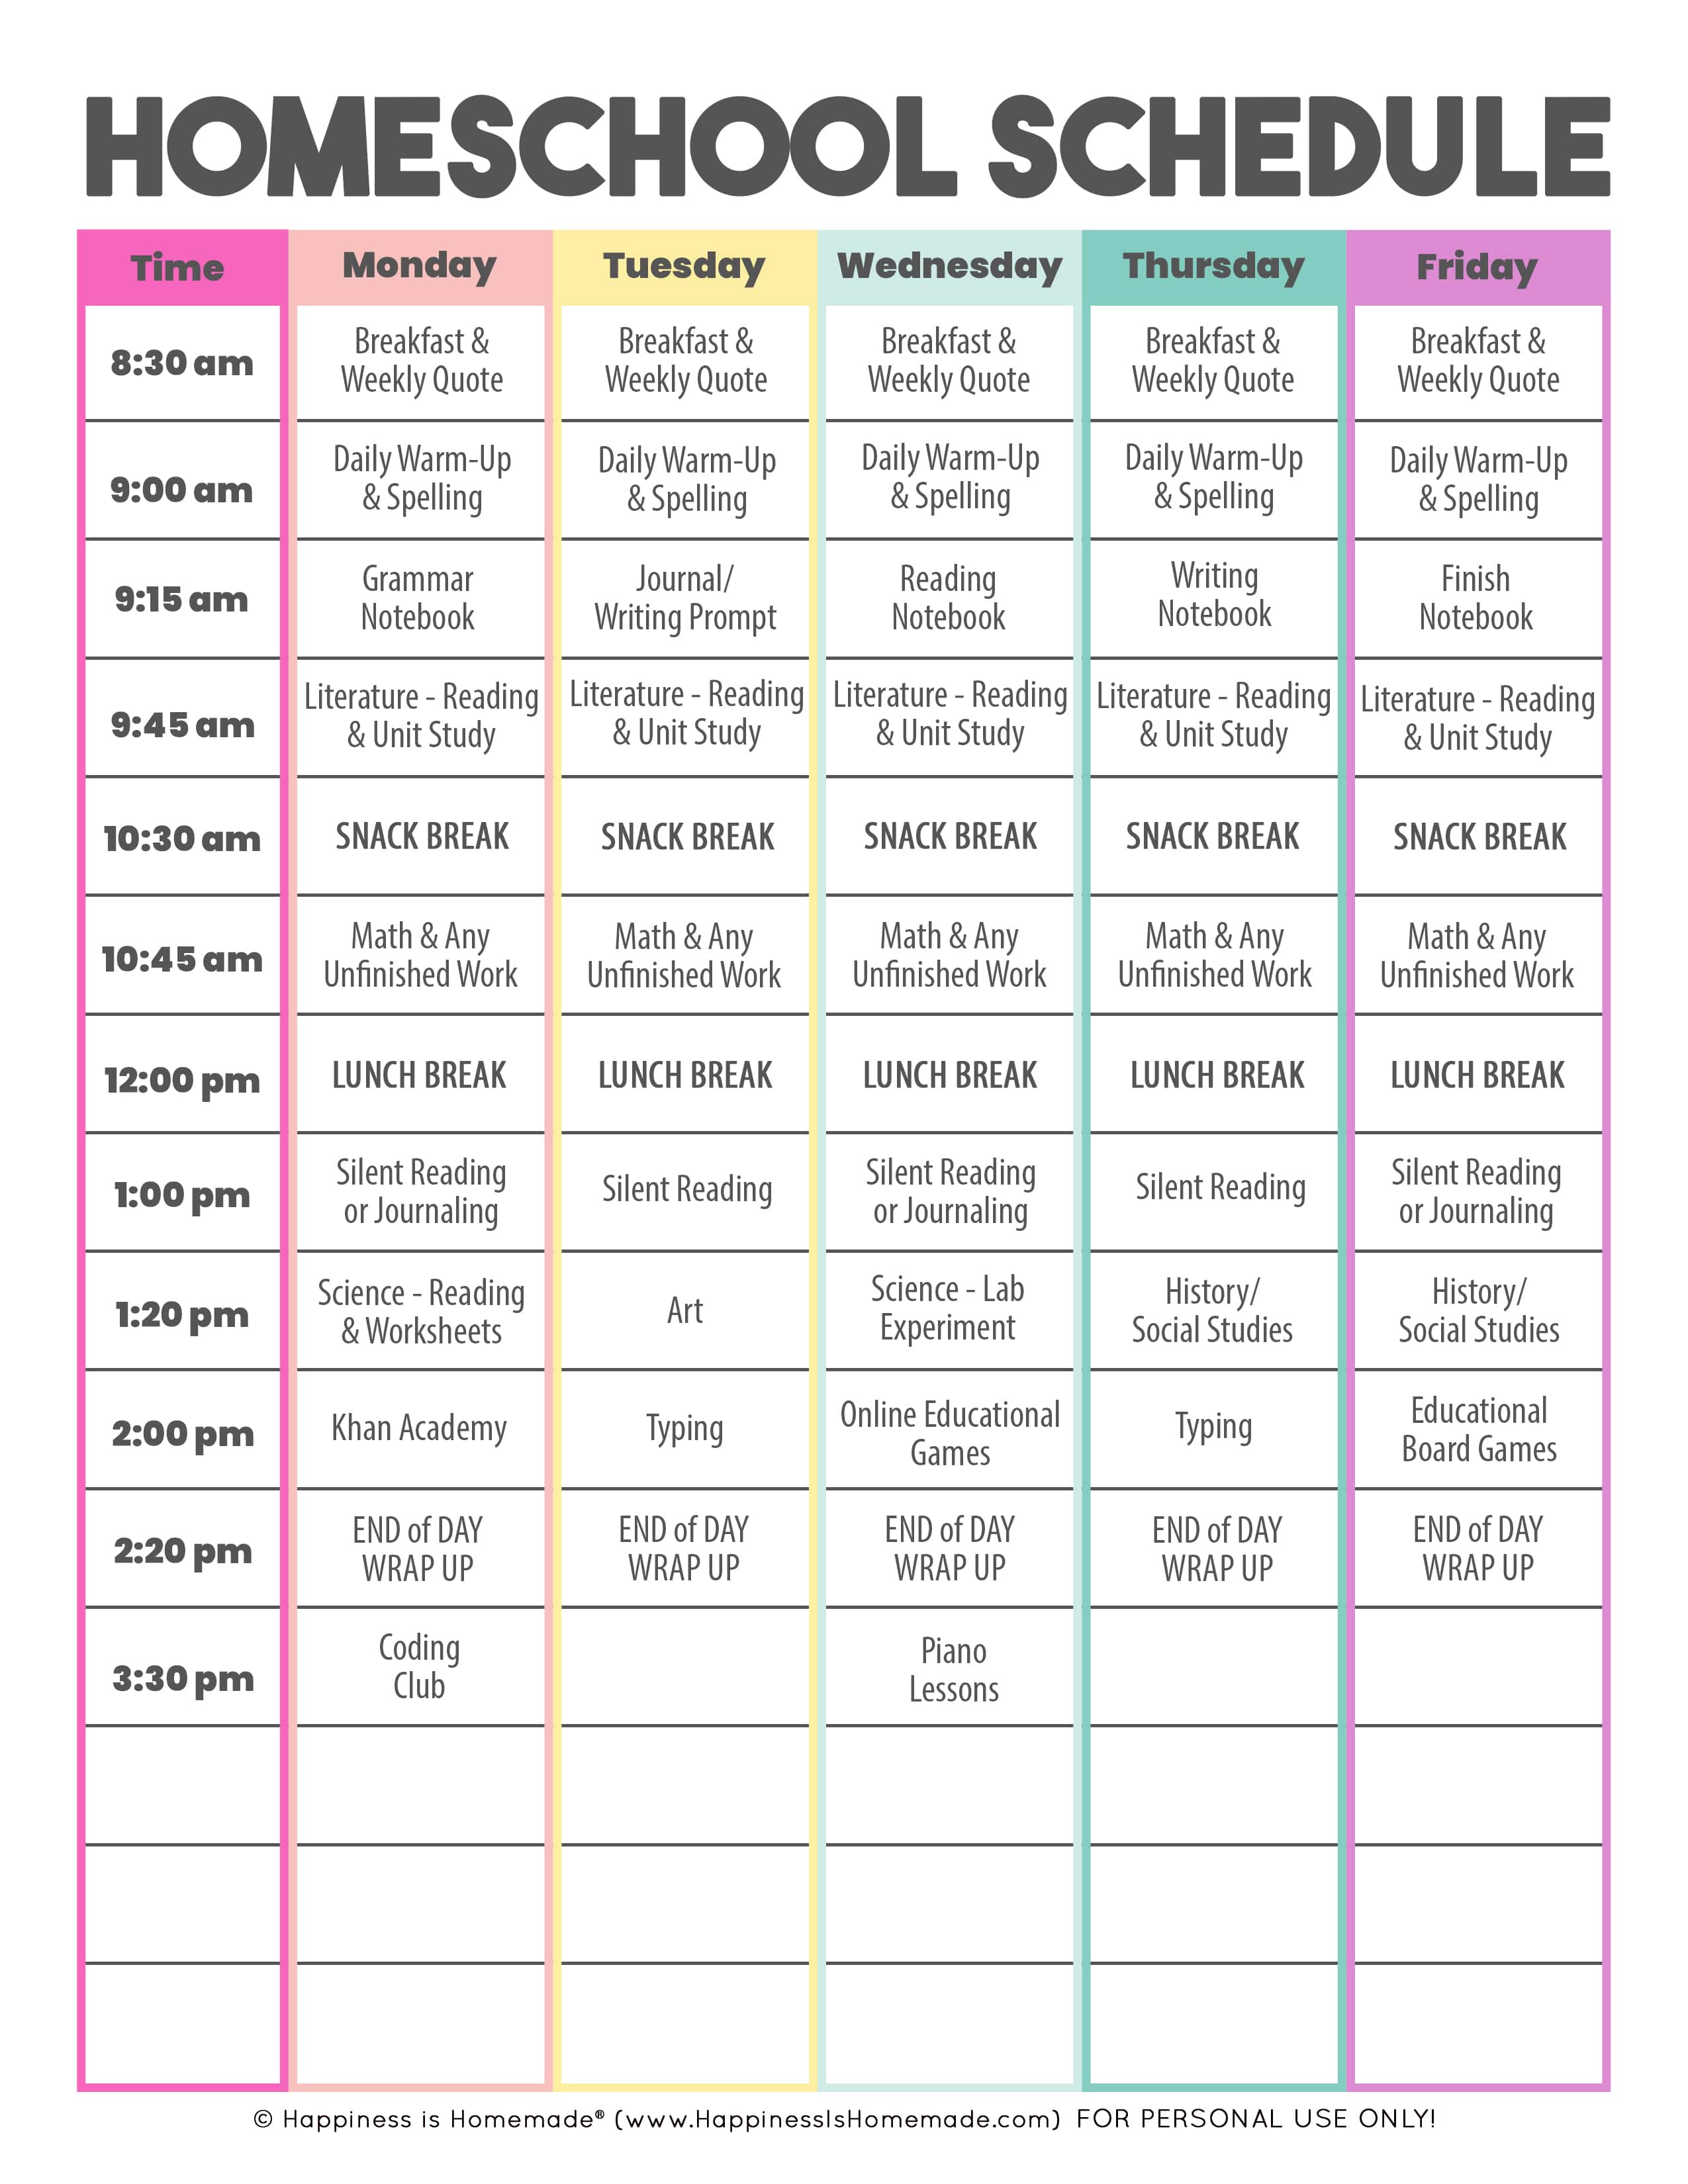 sample of homeschool schedule written out on sheet